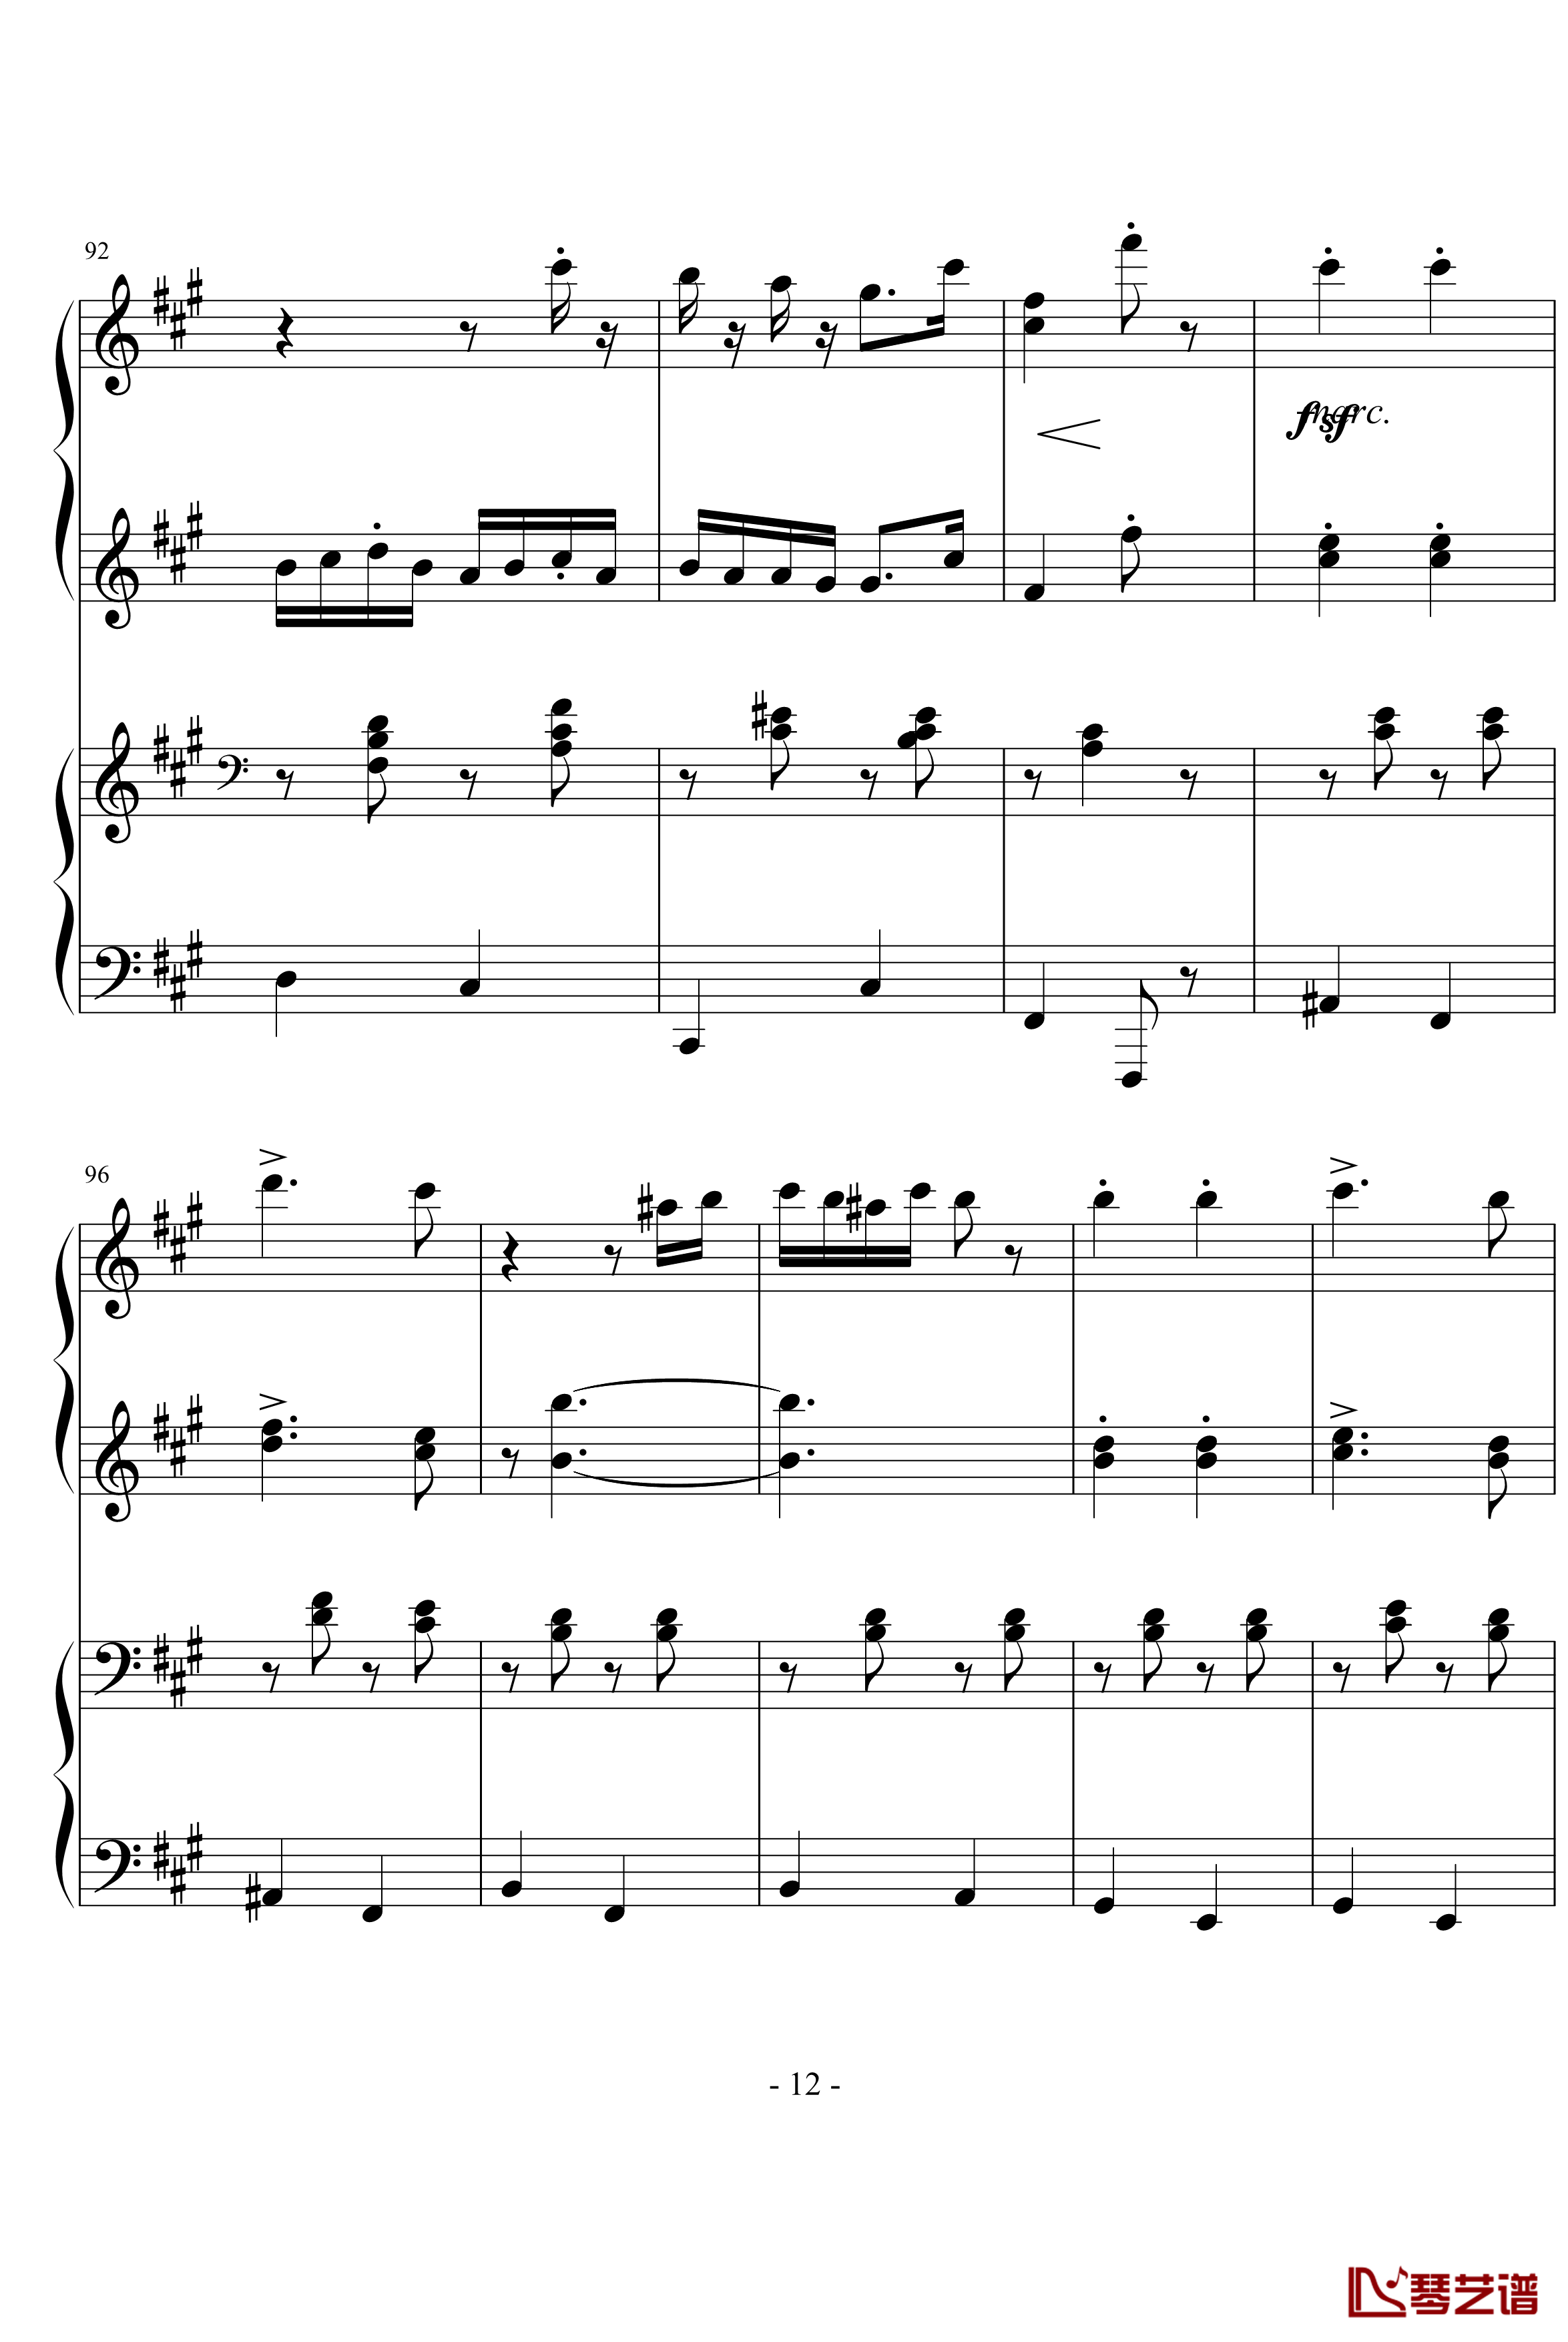 匈牙利舞曲第5号钢琴谱-勃拉姆斯-Brahms12